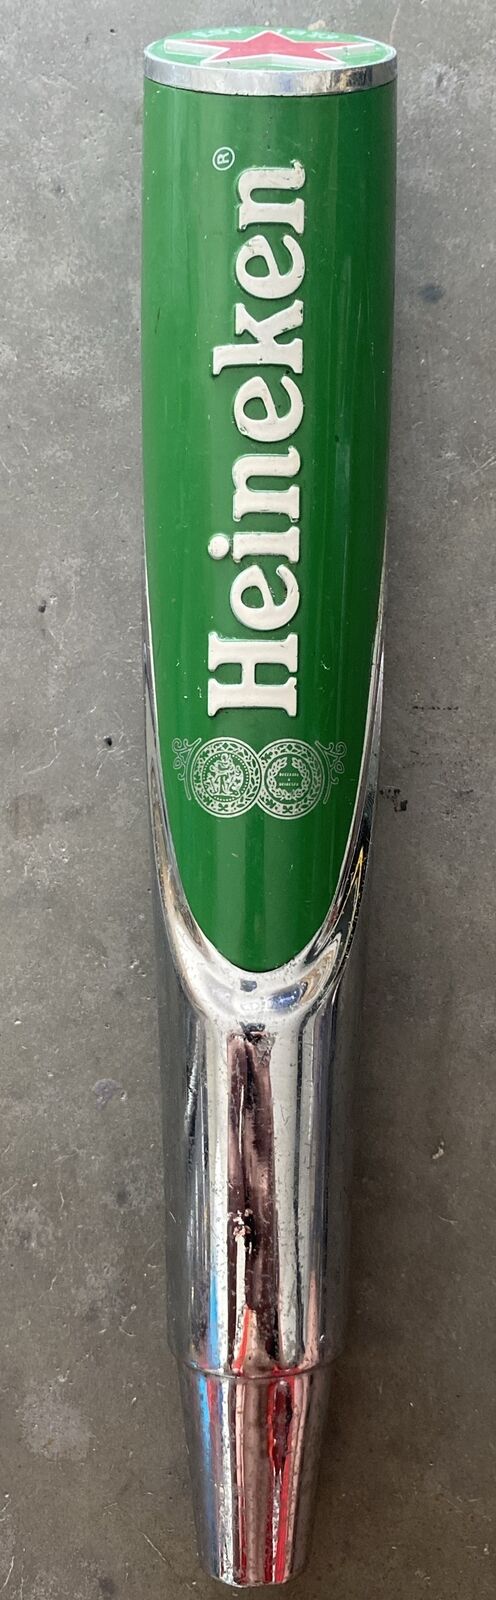 Heineken Red Star Beer Tap Handle Holland ( Please See Pictures)